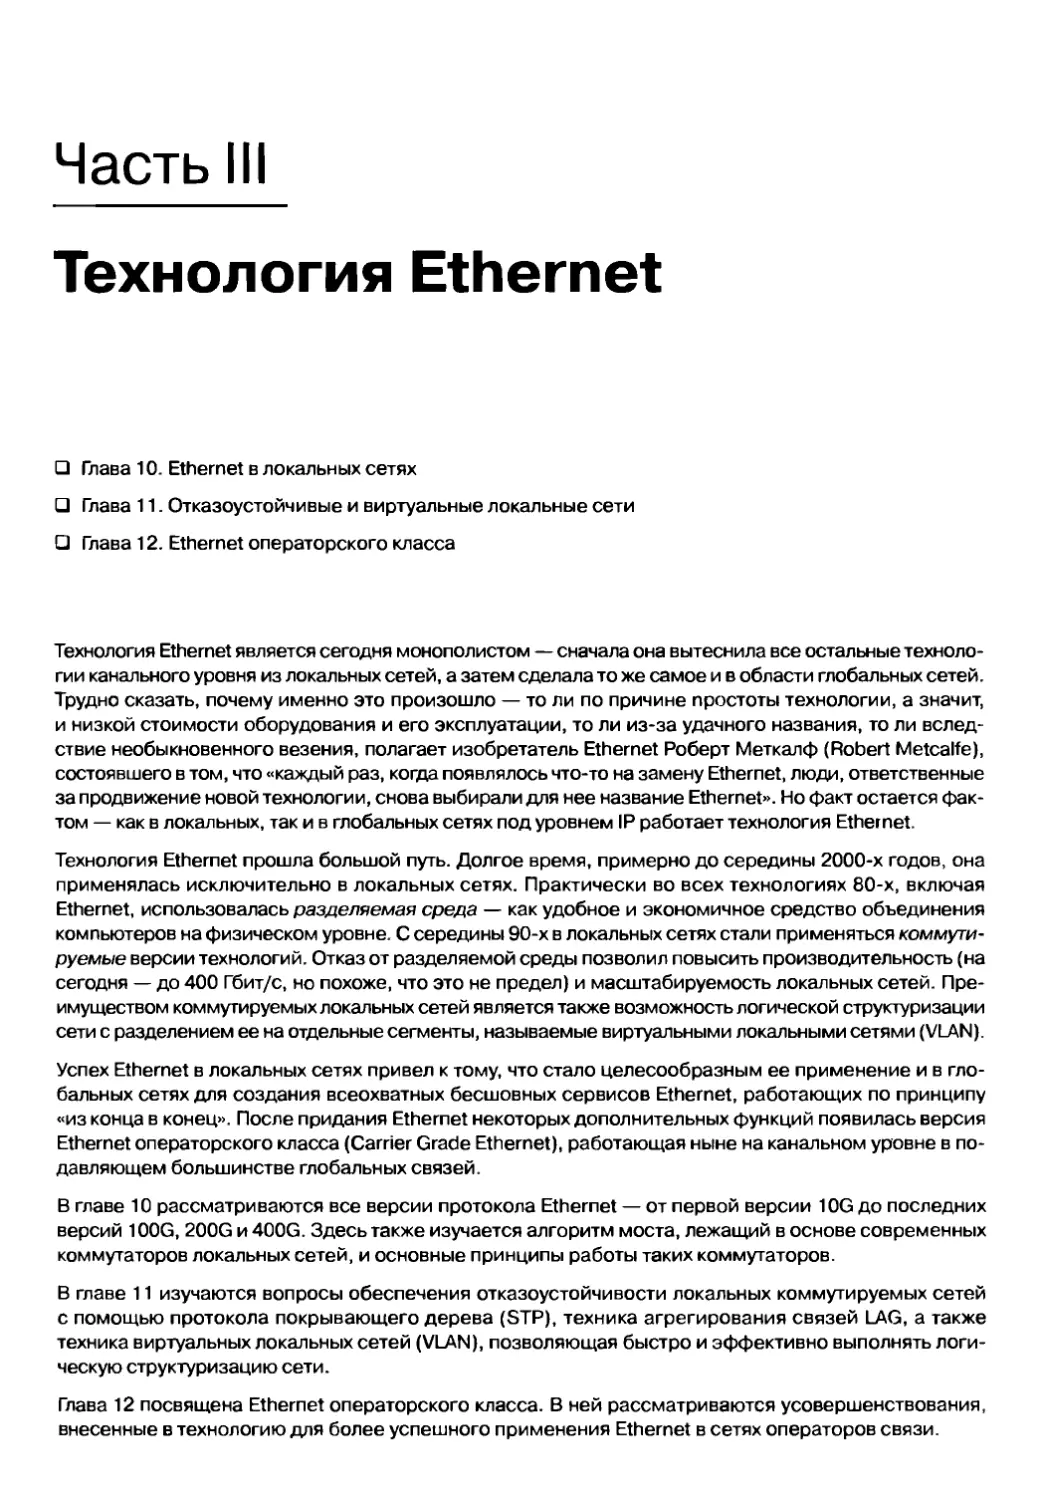 III. Технология Ethernet